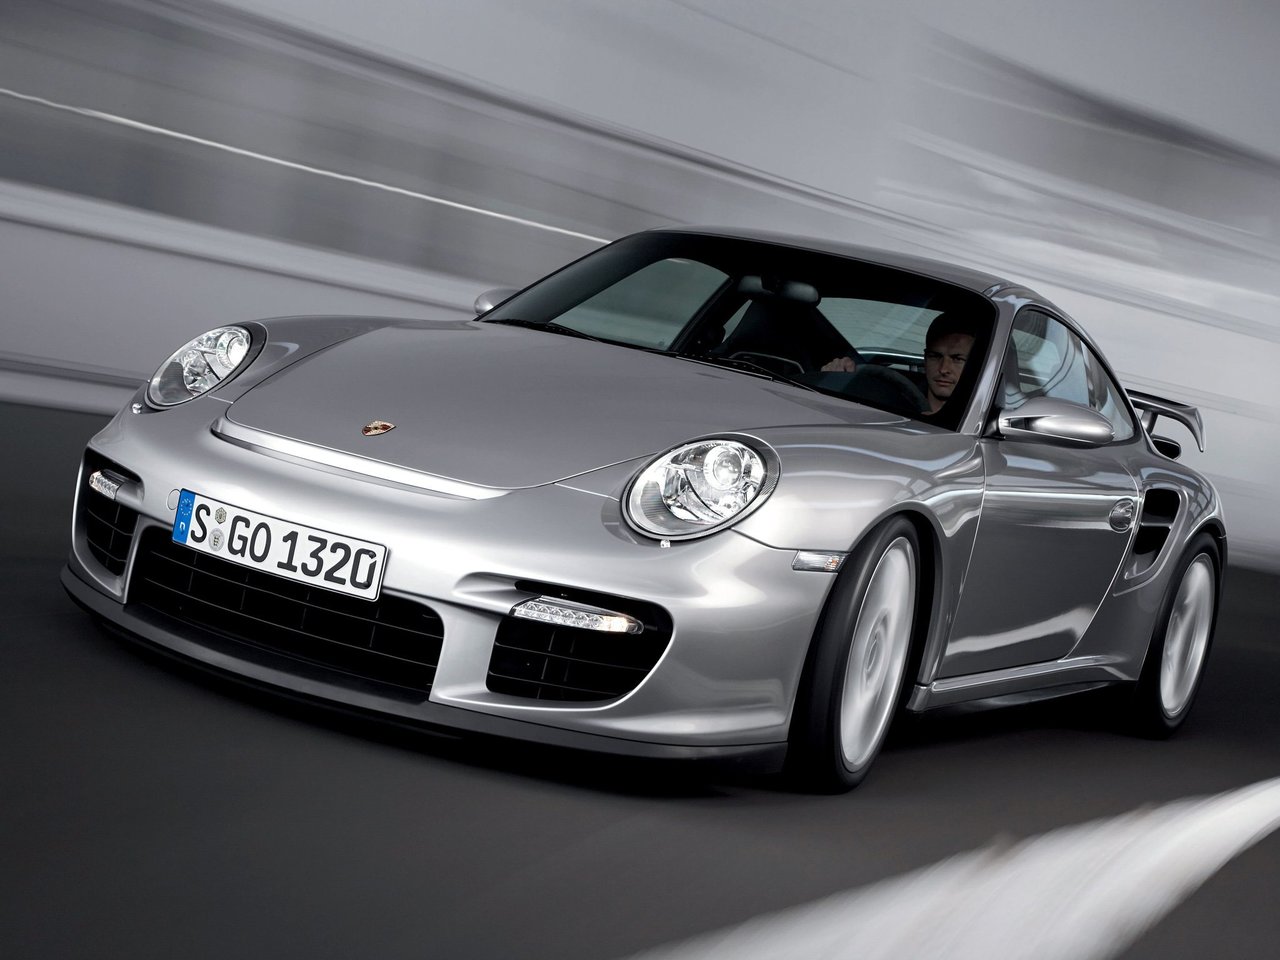 Снижаем расход Porsche 911 GT2 на топливо, устанавливаем ГБО